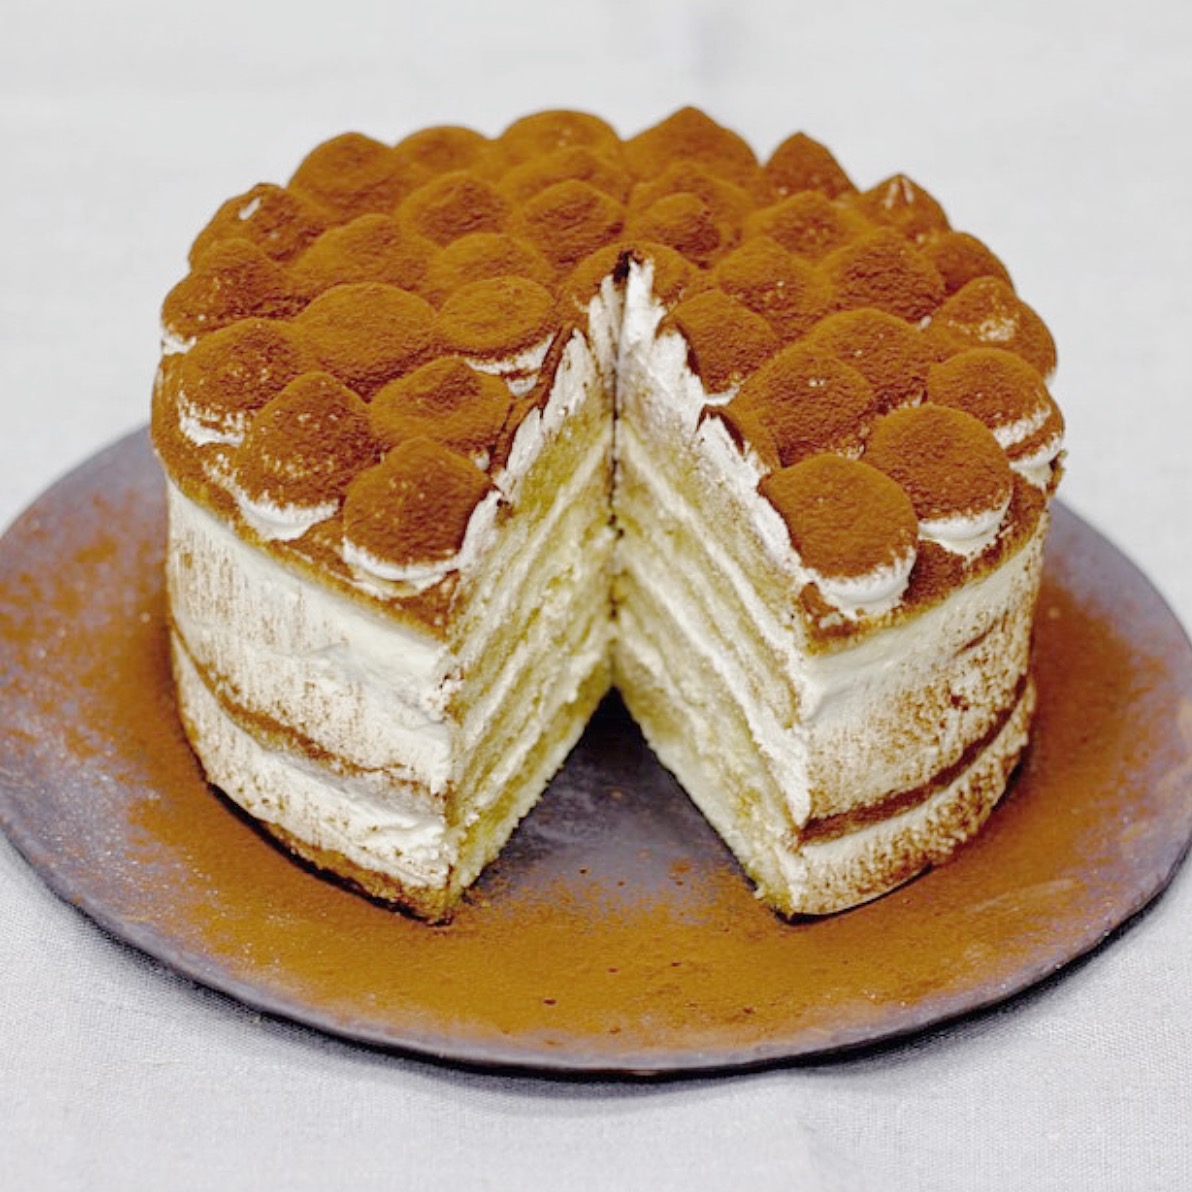 cakes cakes  tiramisu cake  categories tags buttercream baking cake tiramisu birthday  perth